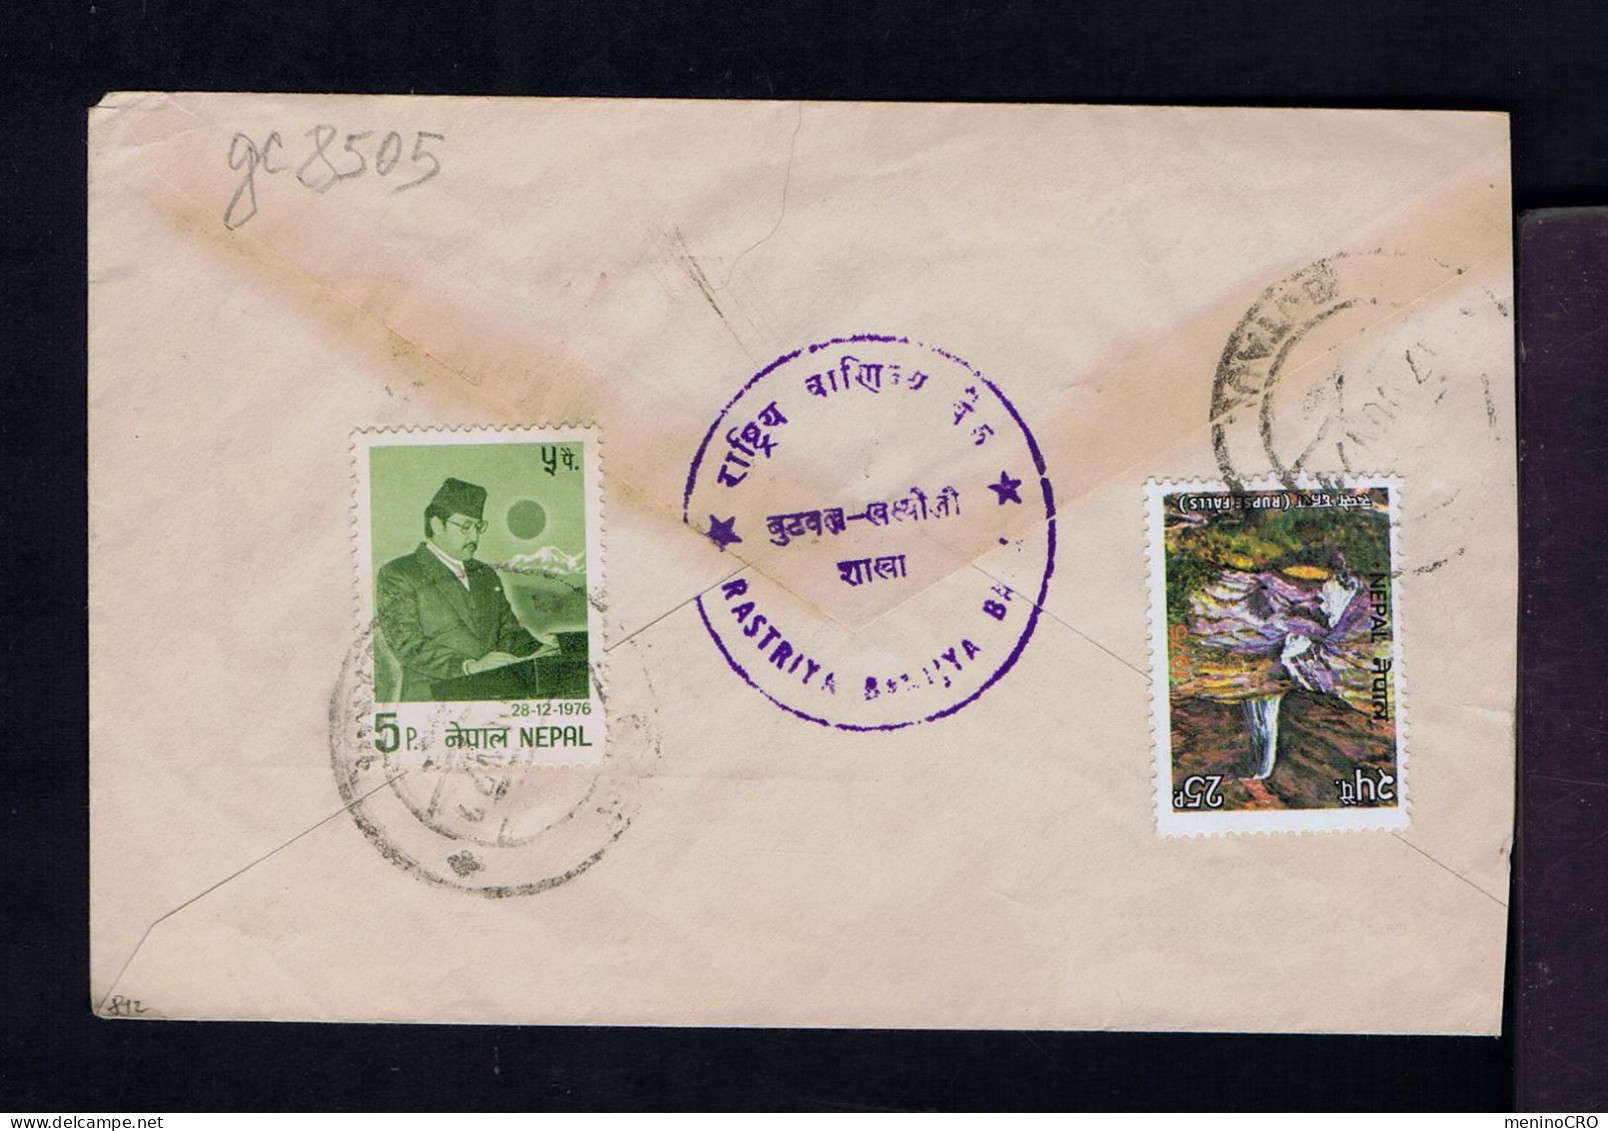 Gc8505 NEPAL "rupse Falls" Landescape Tourisme  28-12-1976 32 Ann. Du Roi Mailed - Familles Royales